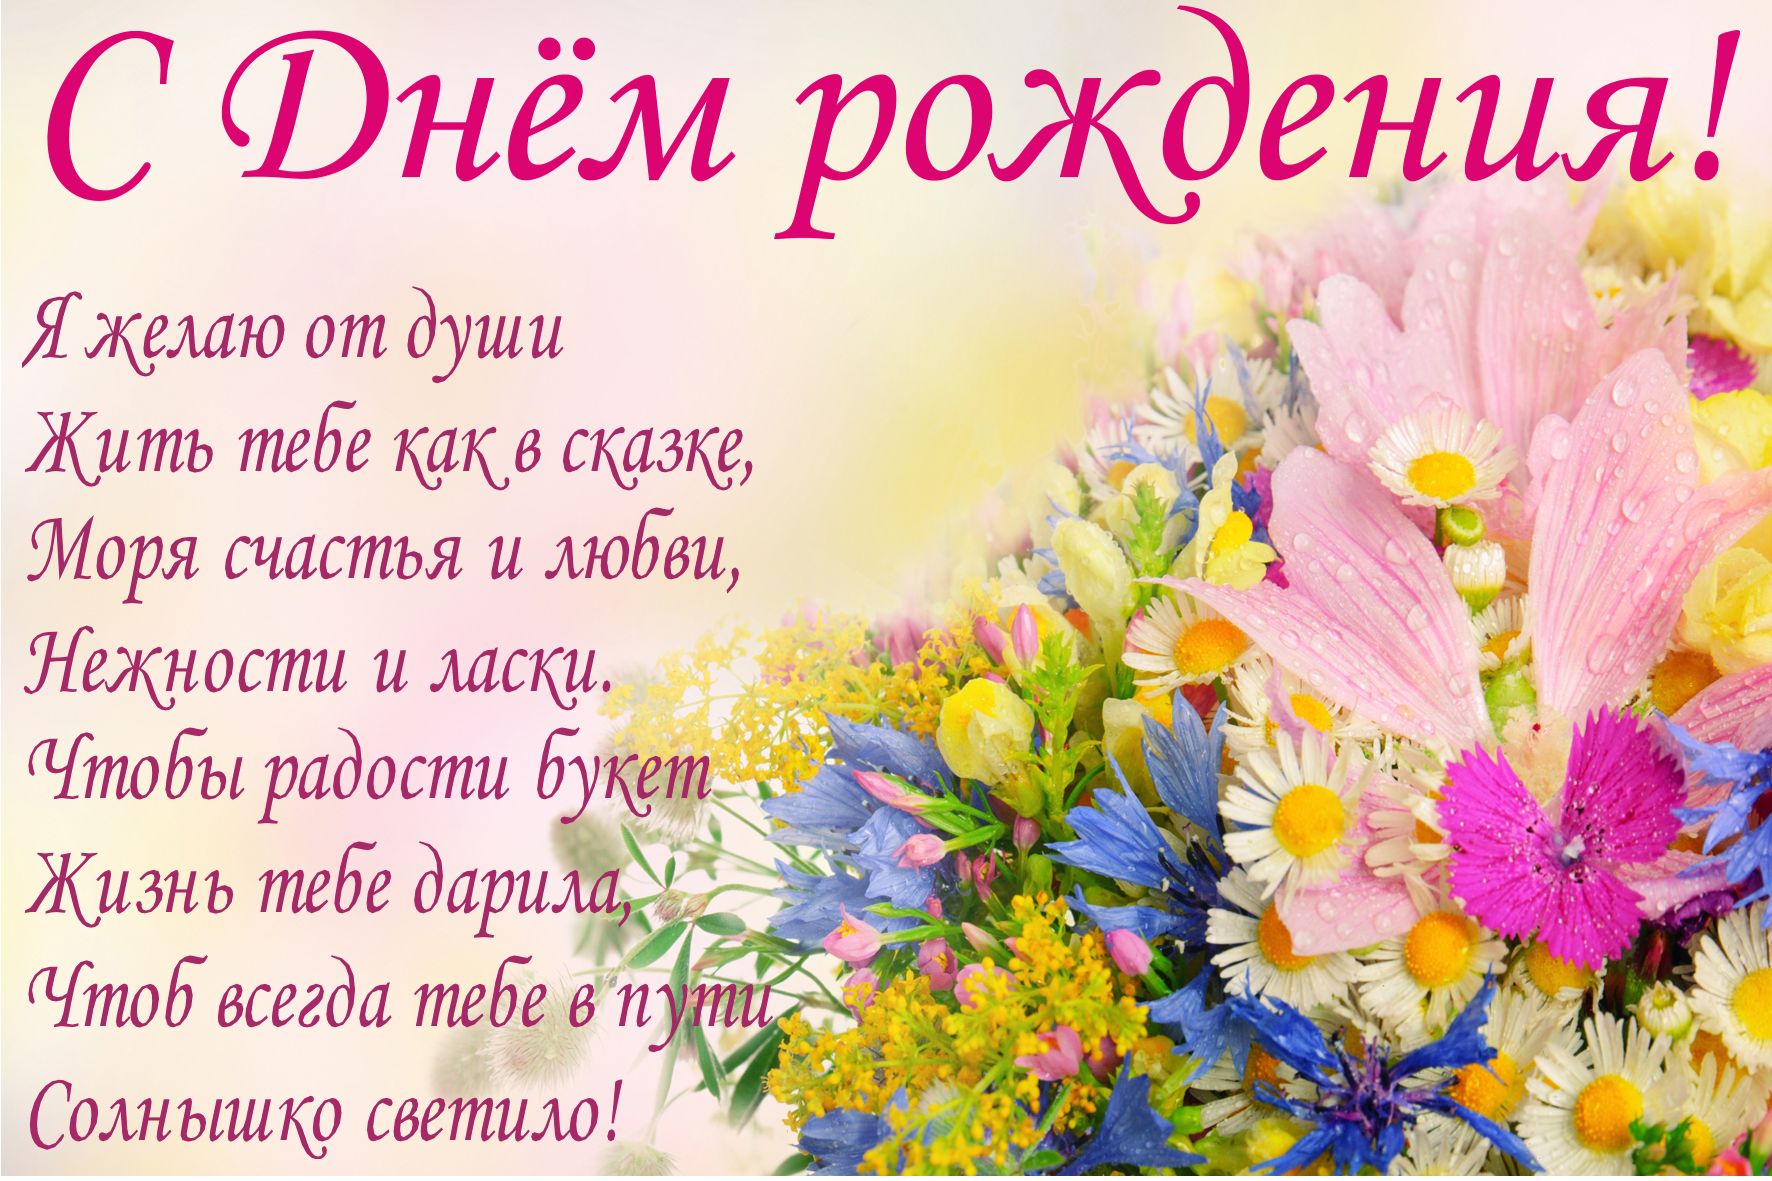 Нашу дорогую Юленьку (admin) с Днем рождения!!)) - Поздравления с днем рождения, с рождением и с другими праздниками - berehyni.com